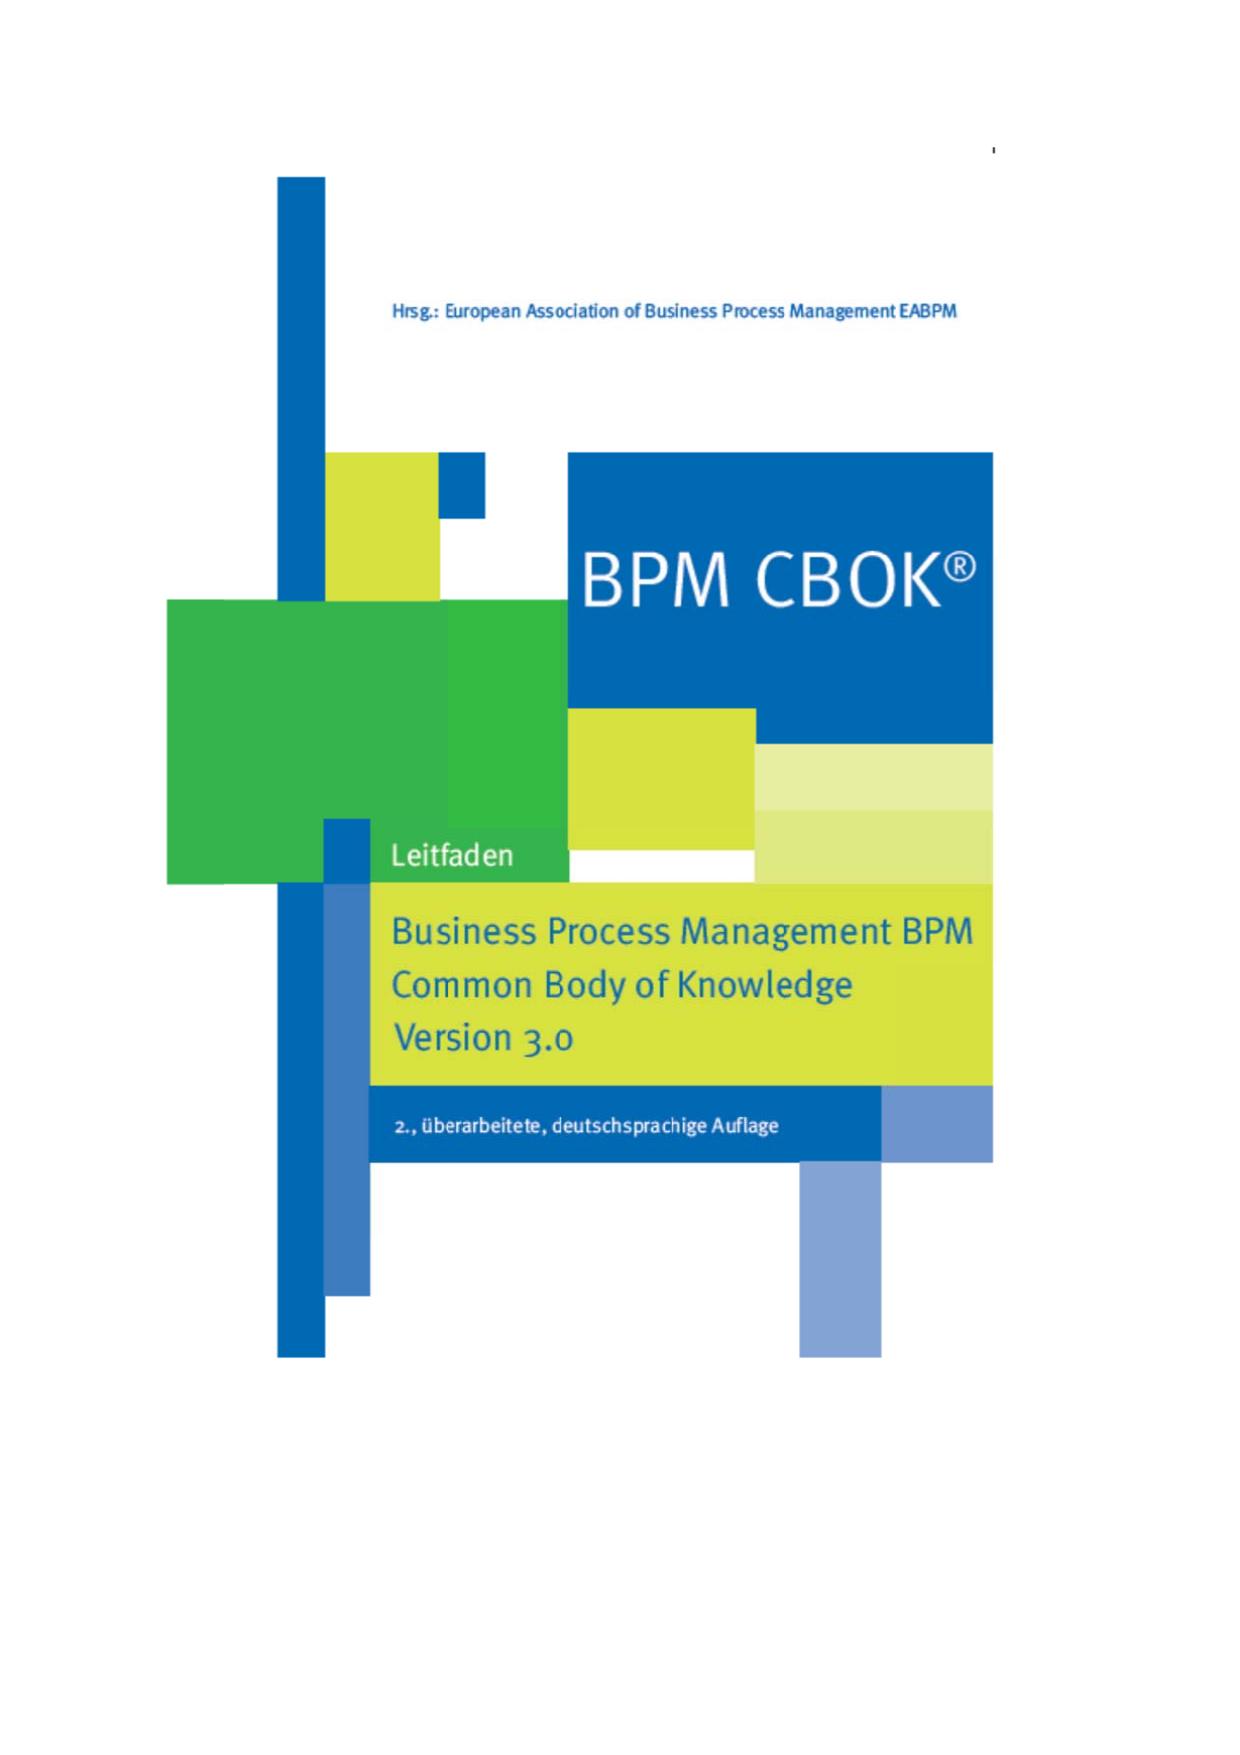 BPM CBOK® - Business Process Management BPM Common Body of Knowledge, Version 3.0: Leitfaden für das Prozessmanagement